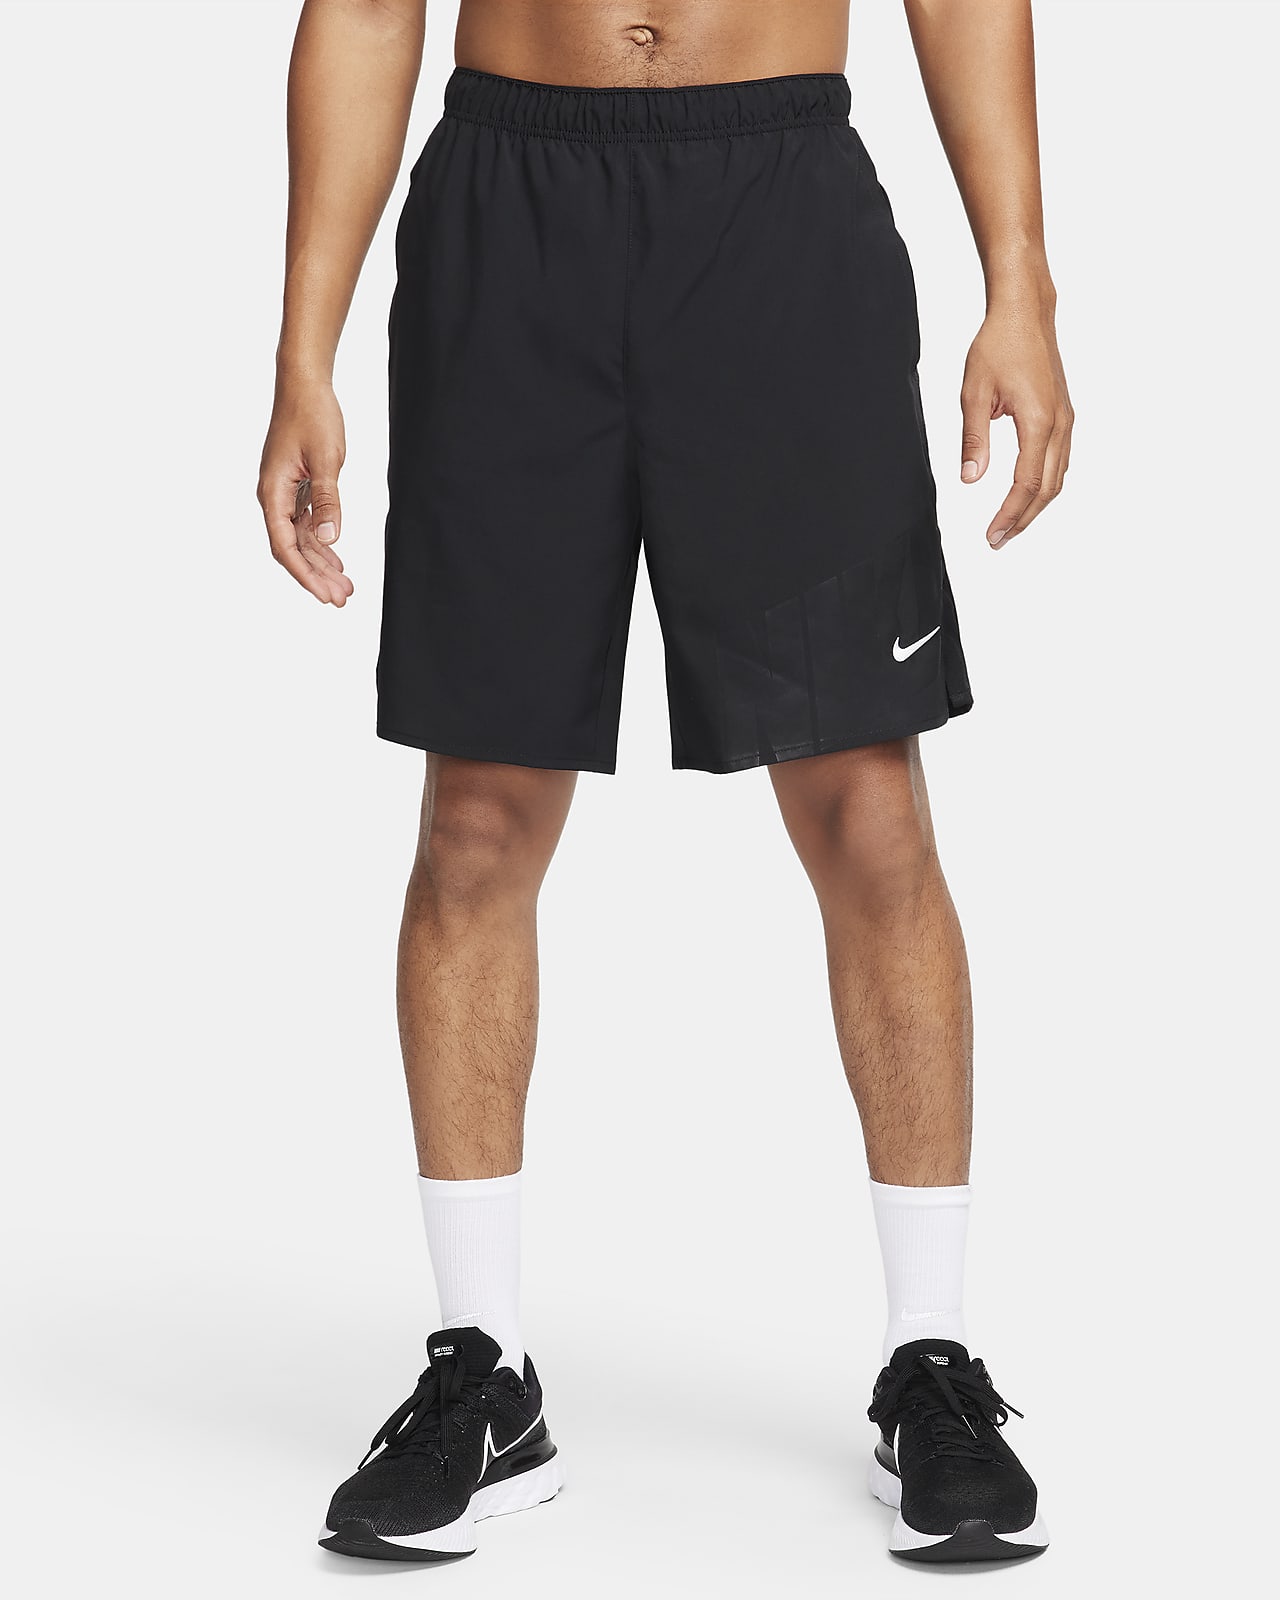 Calções de running sem forro de 23 cm Dri-FIT Nike Challenger para homem